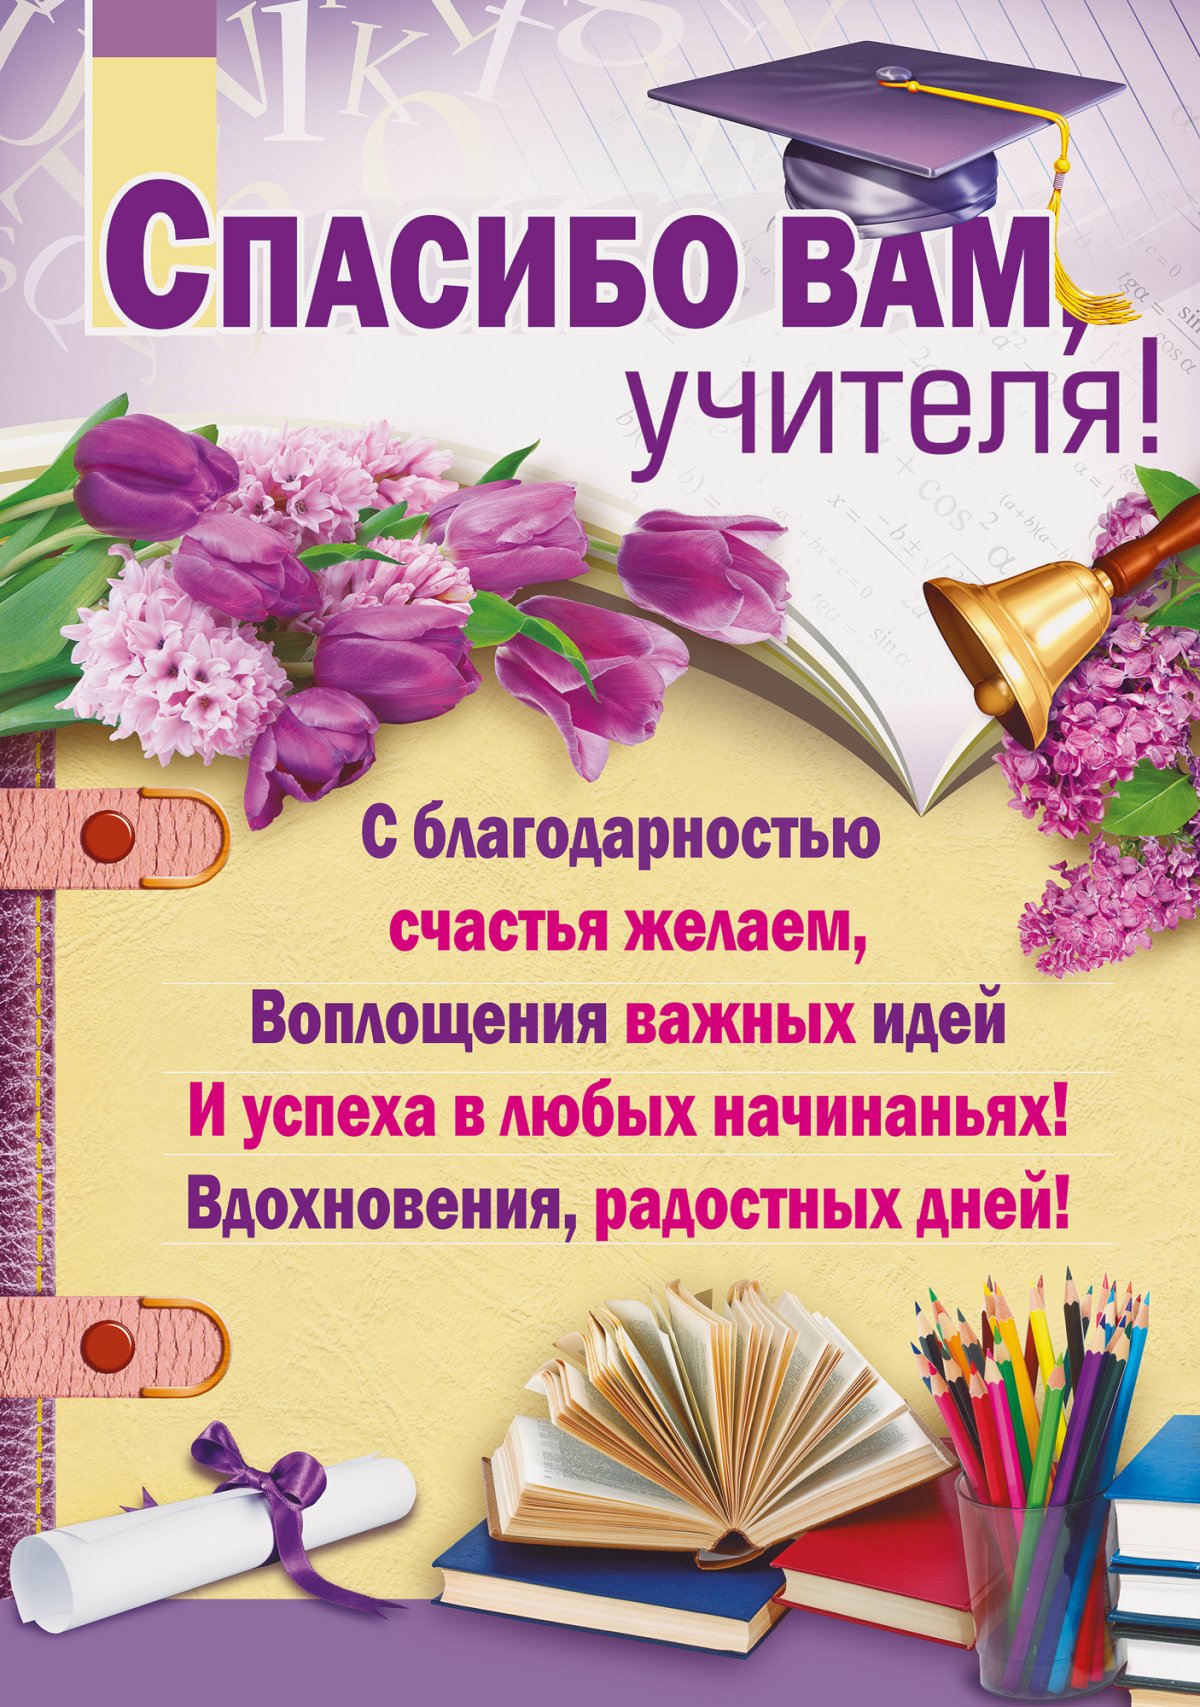 С праздником последнего звонка! Красивые открытки и поздравления для учителей и учеников